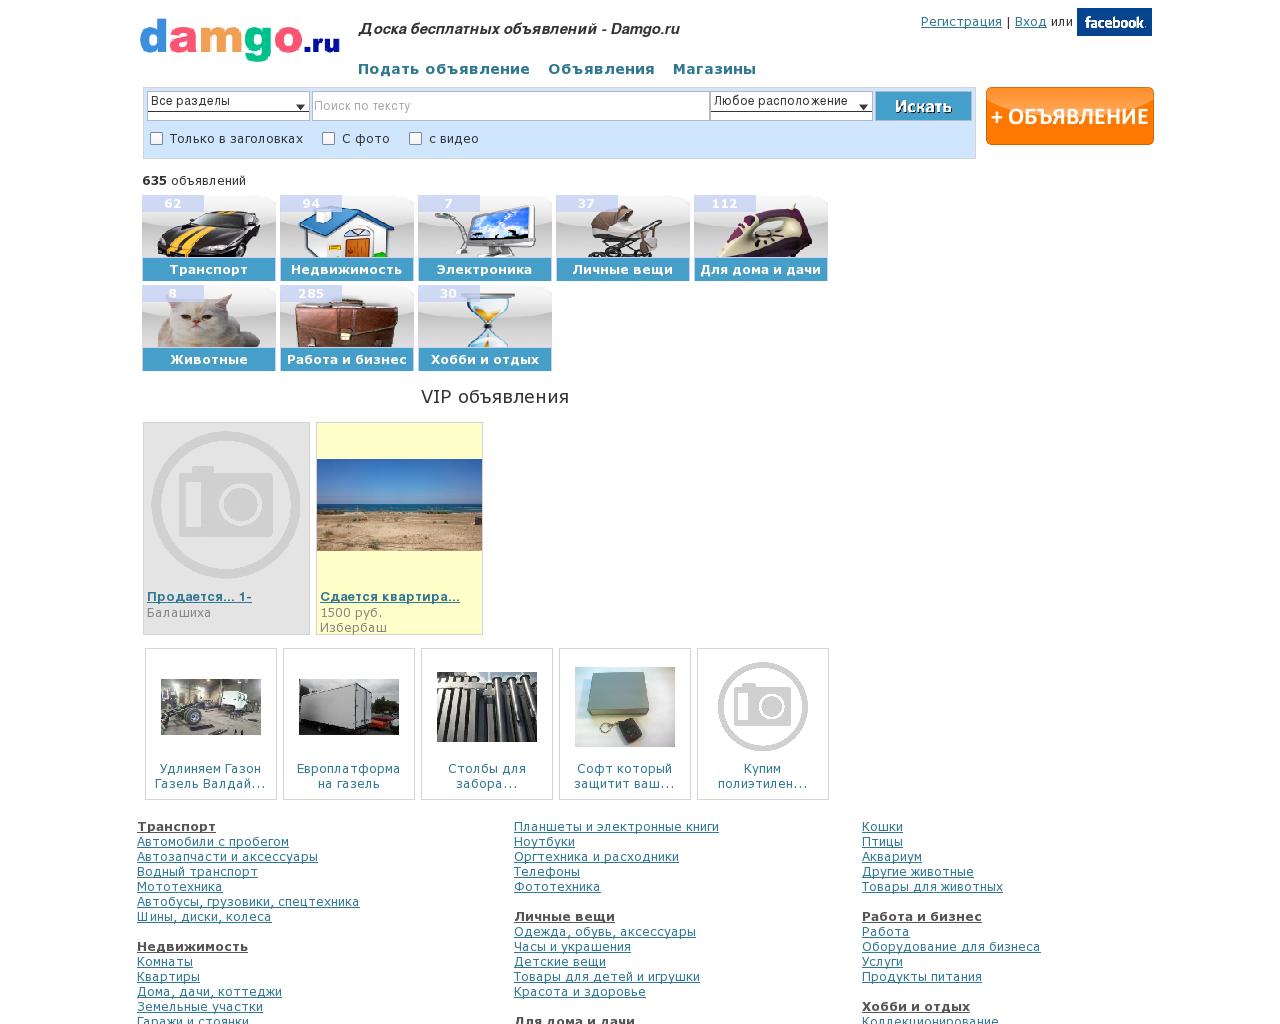 Изображение сайта damgo.ru в разрешении 1280x1024